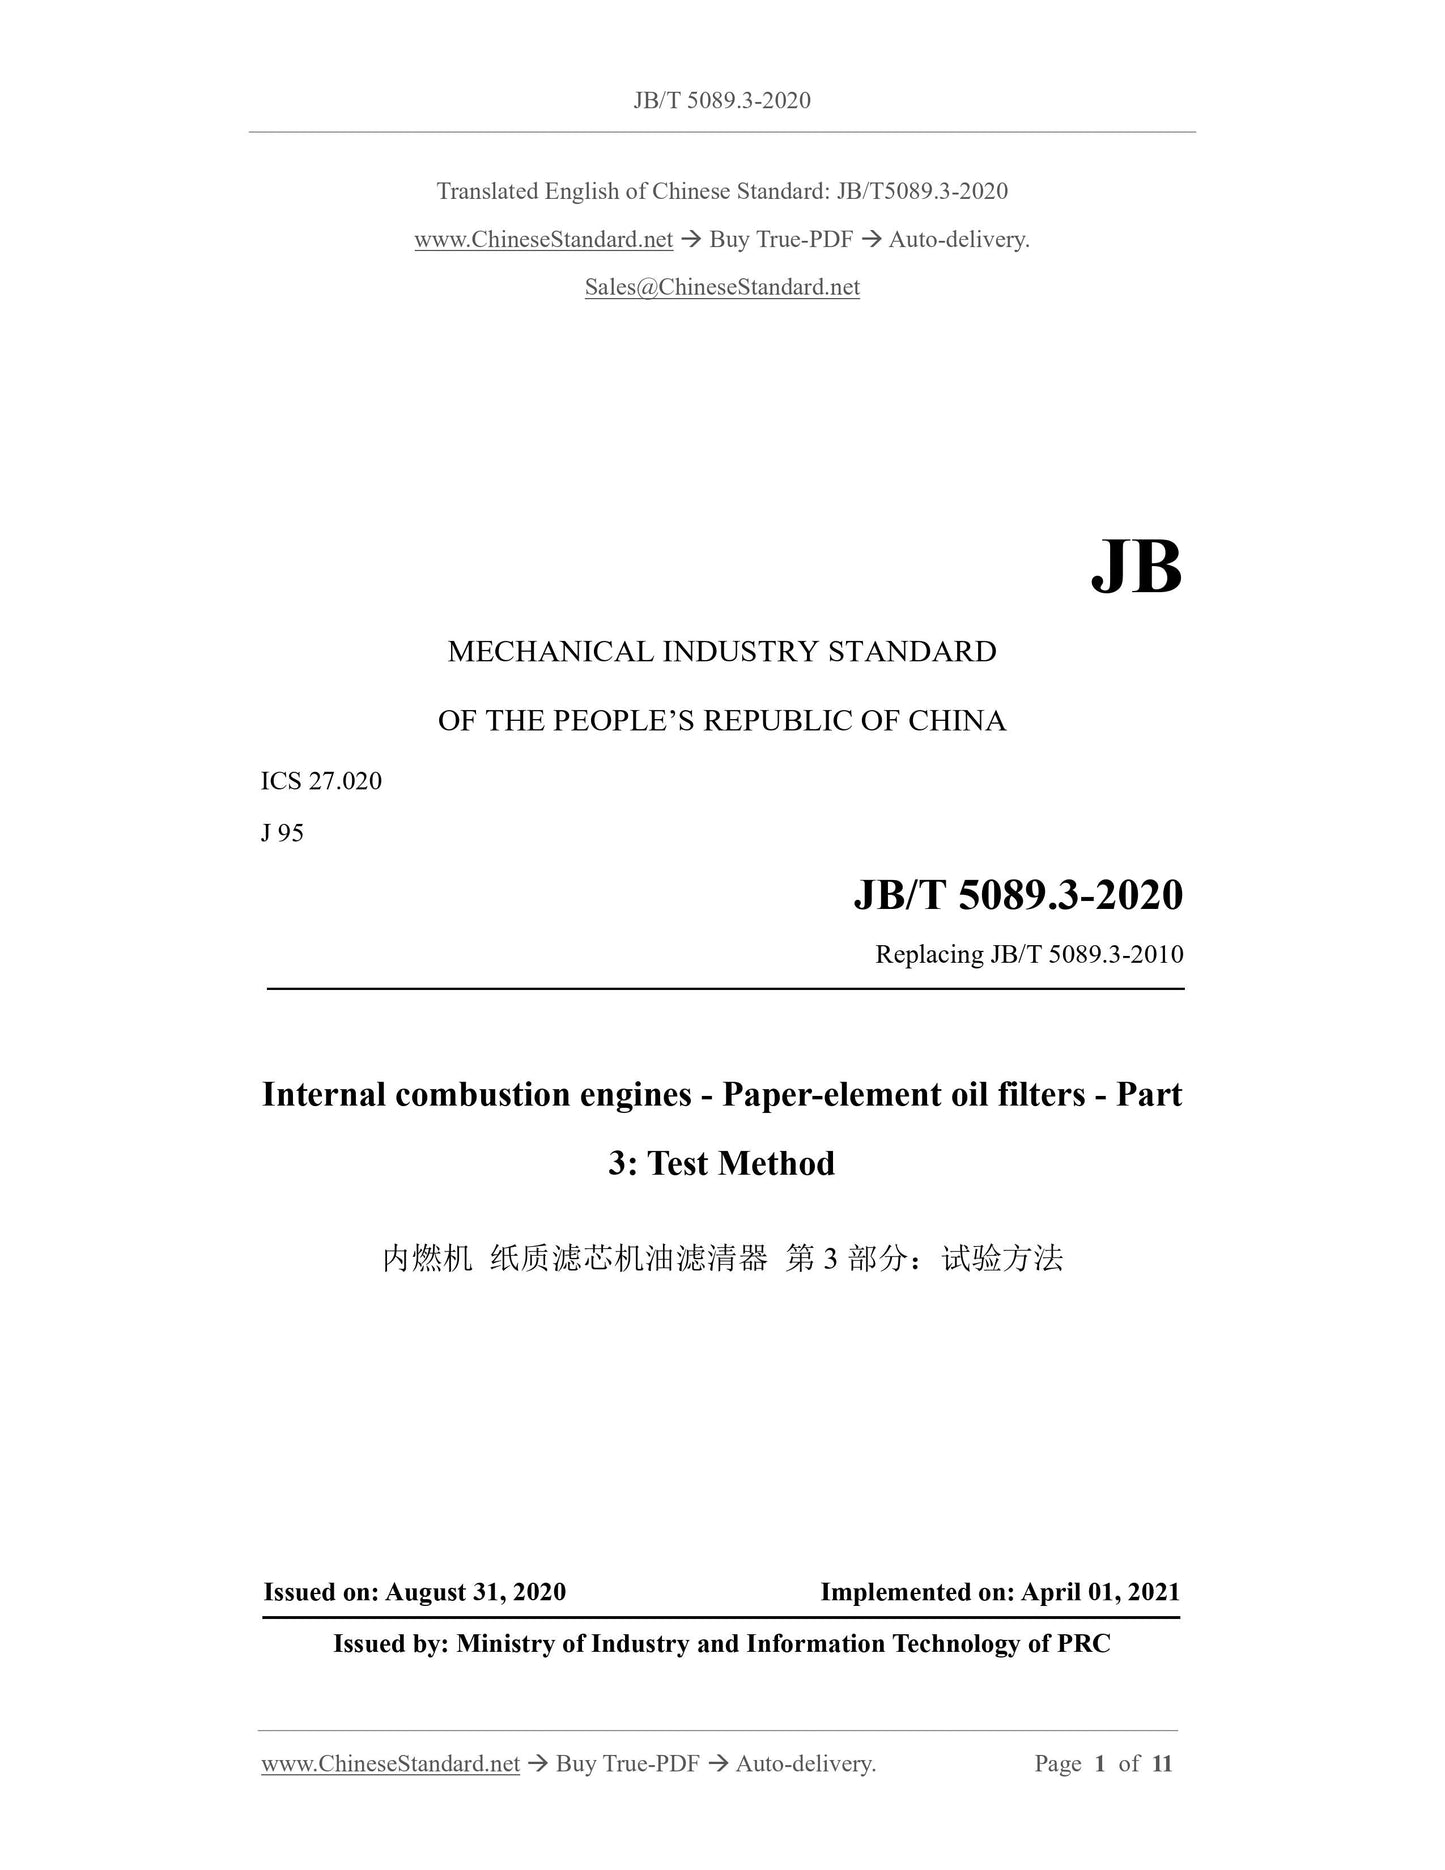 JB/T 5089.3-2020 Page 1